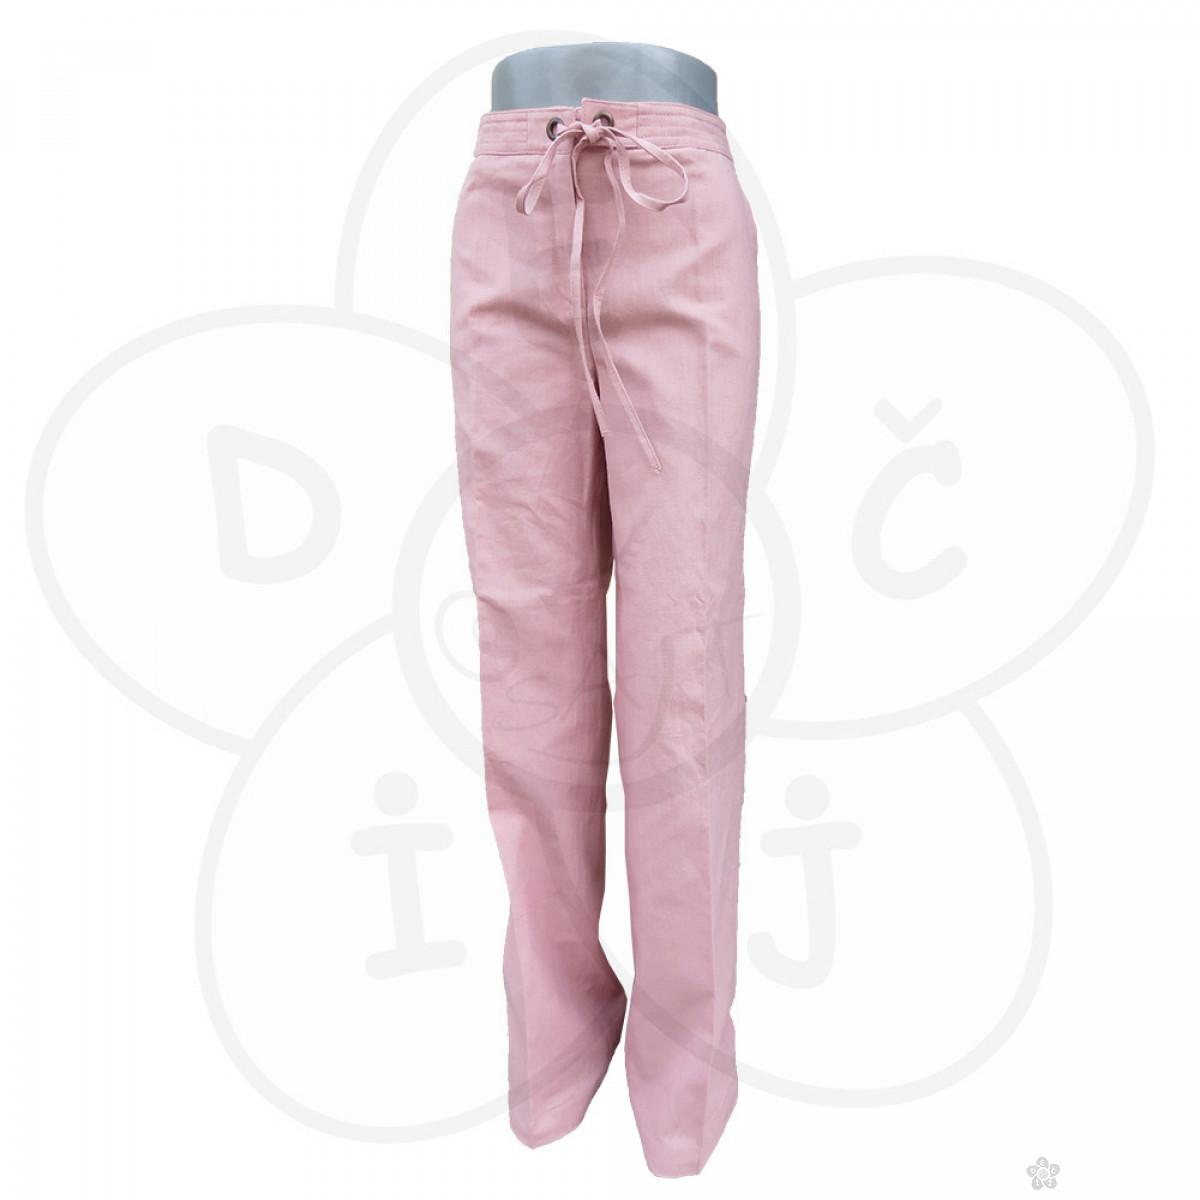 Roze pantalone 